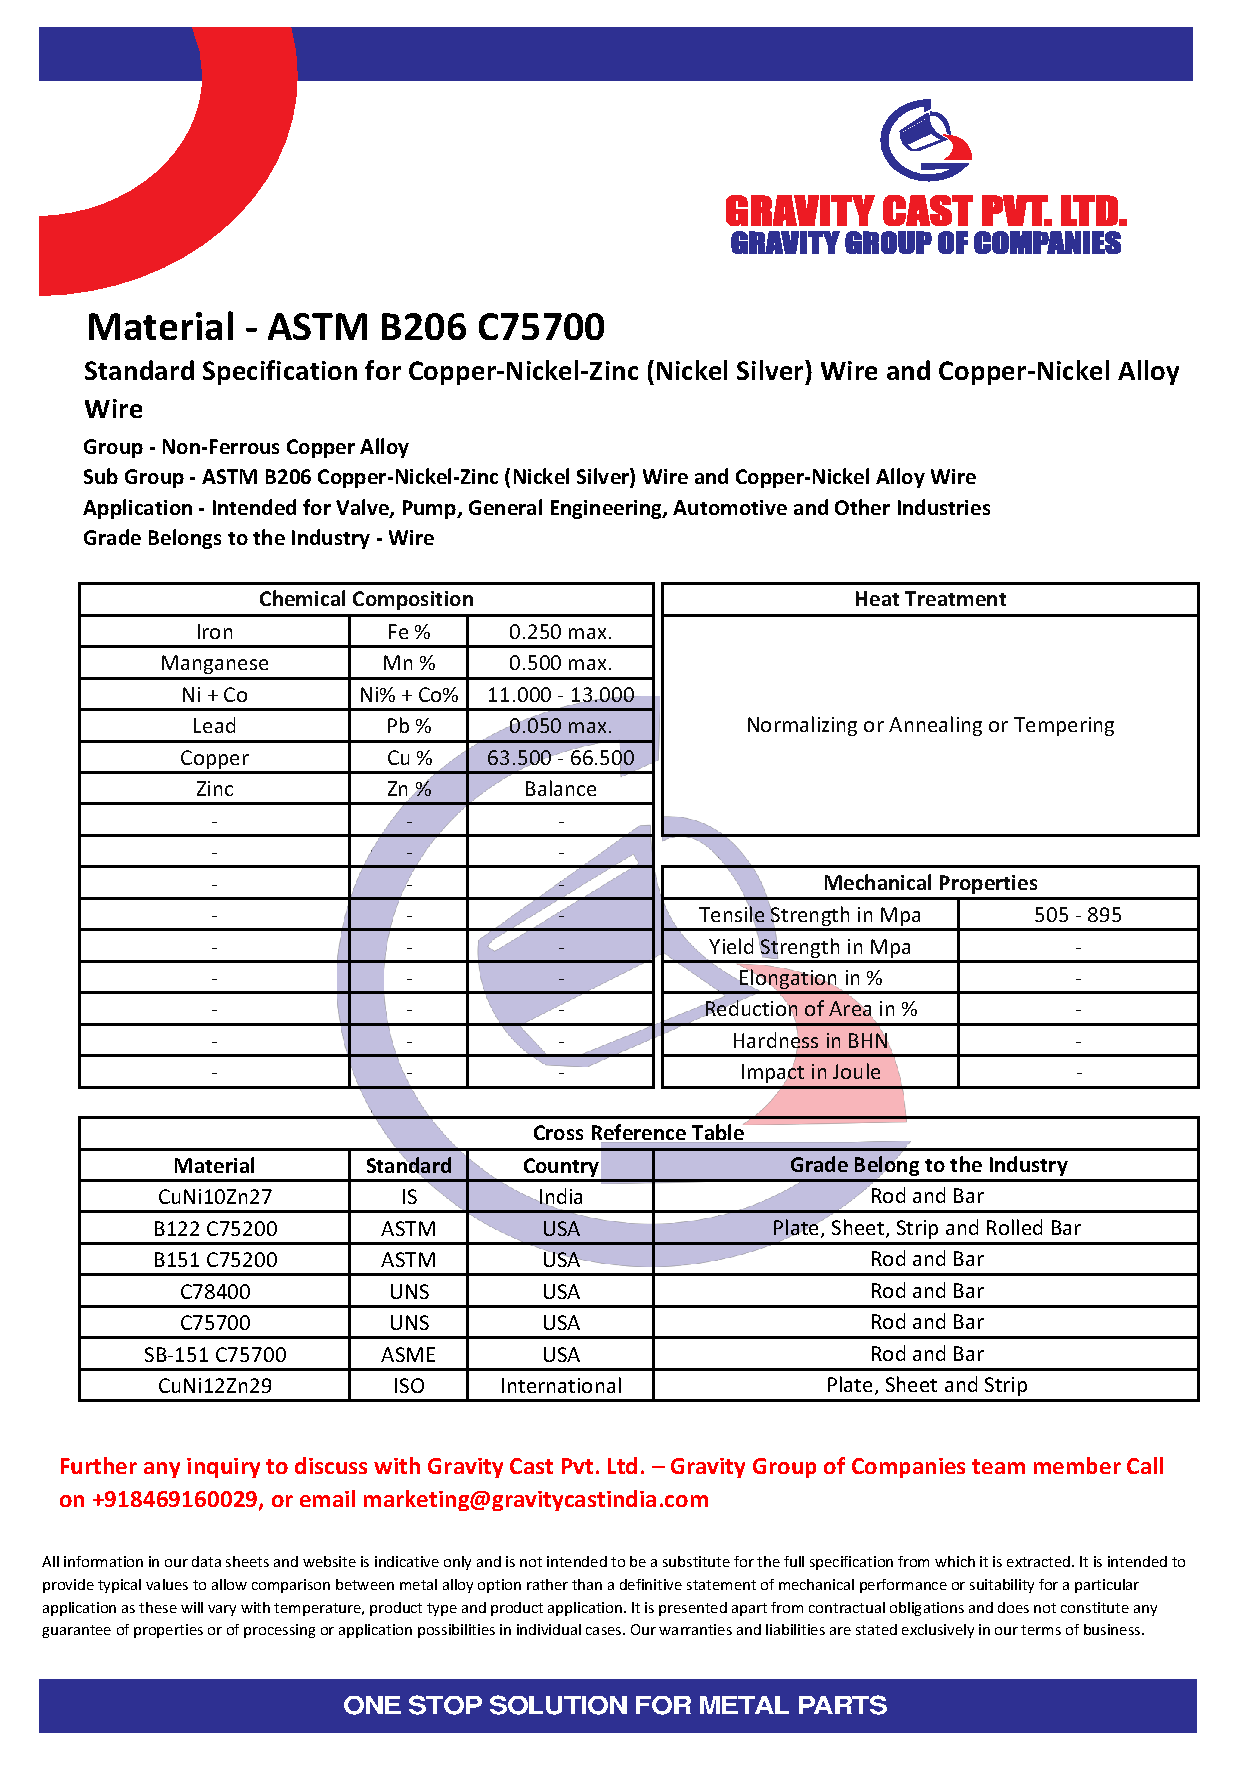 ASTM B206 C75700.pdf